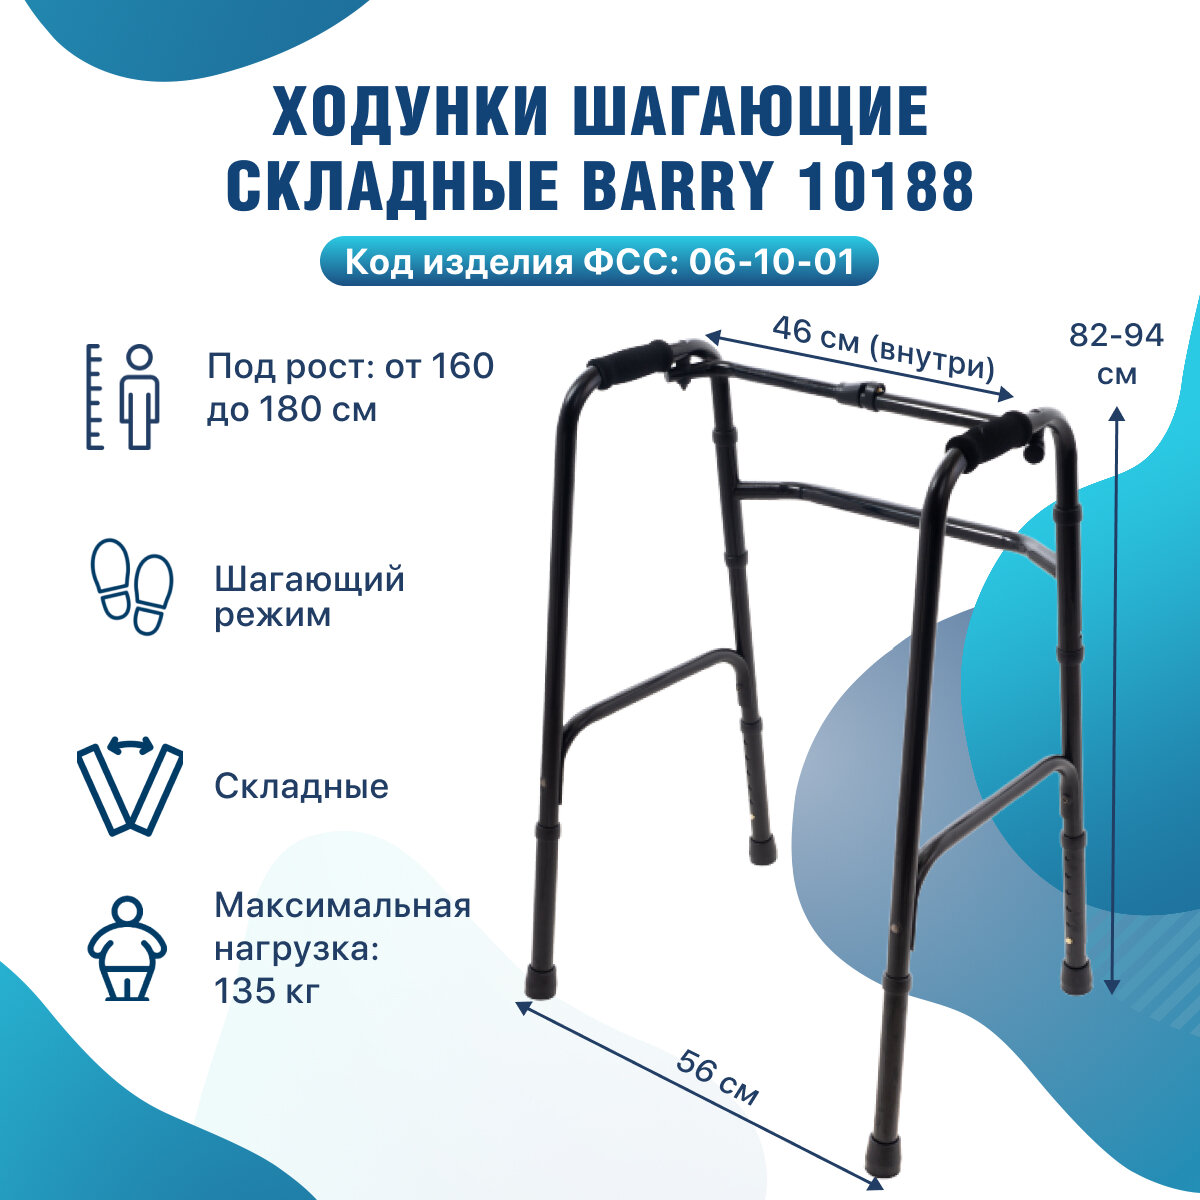 Ходунки шагающие для пожилых и взрослых с регулировкой по высоте 160-180 см цвет черный 10188